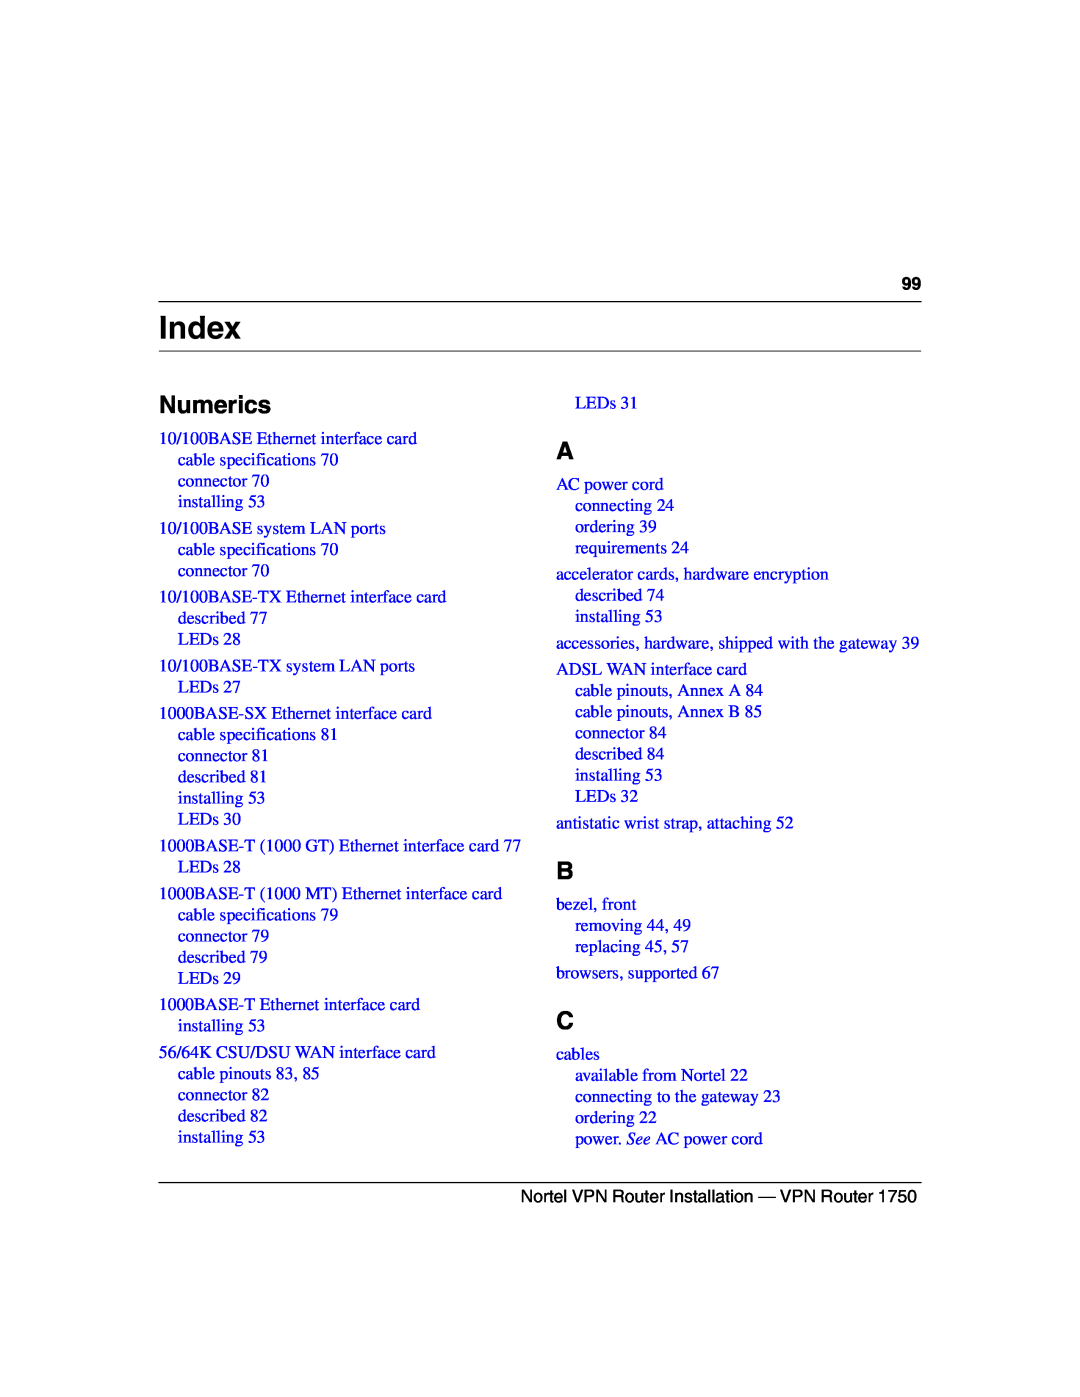 Nortel Networks 1750 manual Index, Numerics 